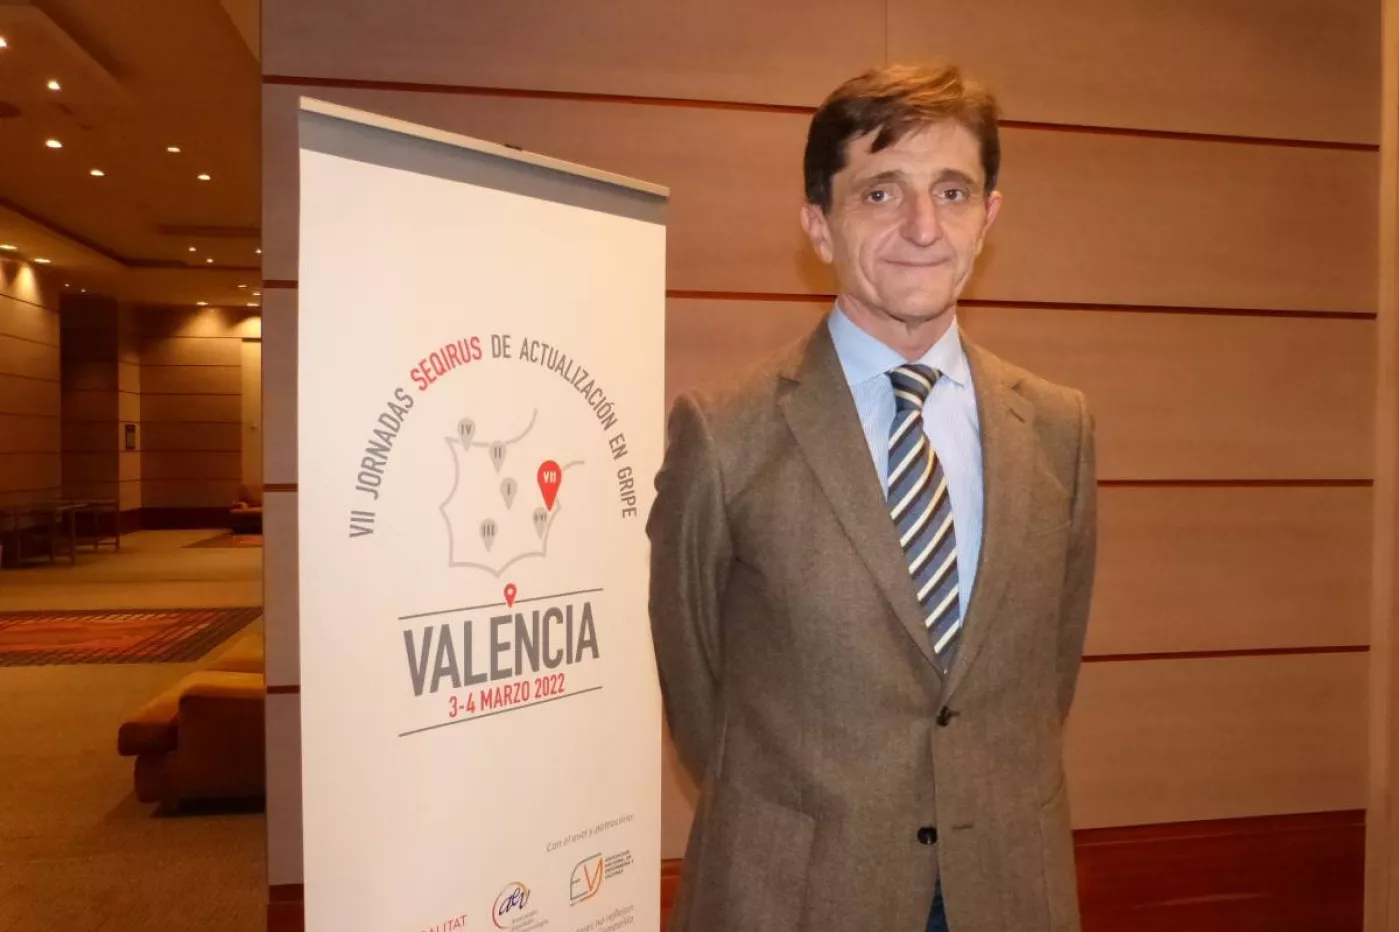 Vicente Bellver, miembro del Comité de Bioética de España y catedrático en Filosofía del Derecho y Filosofía Política de la Universidad de Valencia (UV).